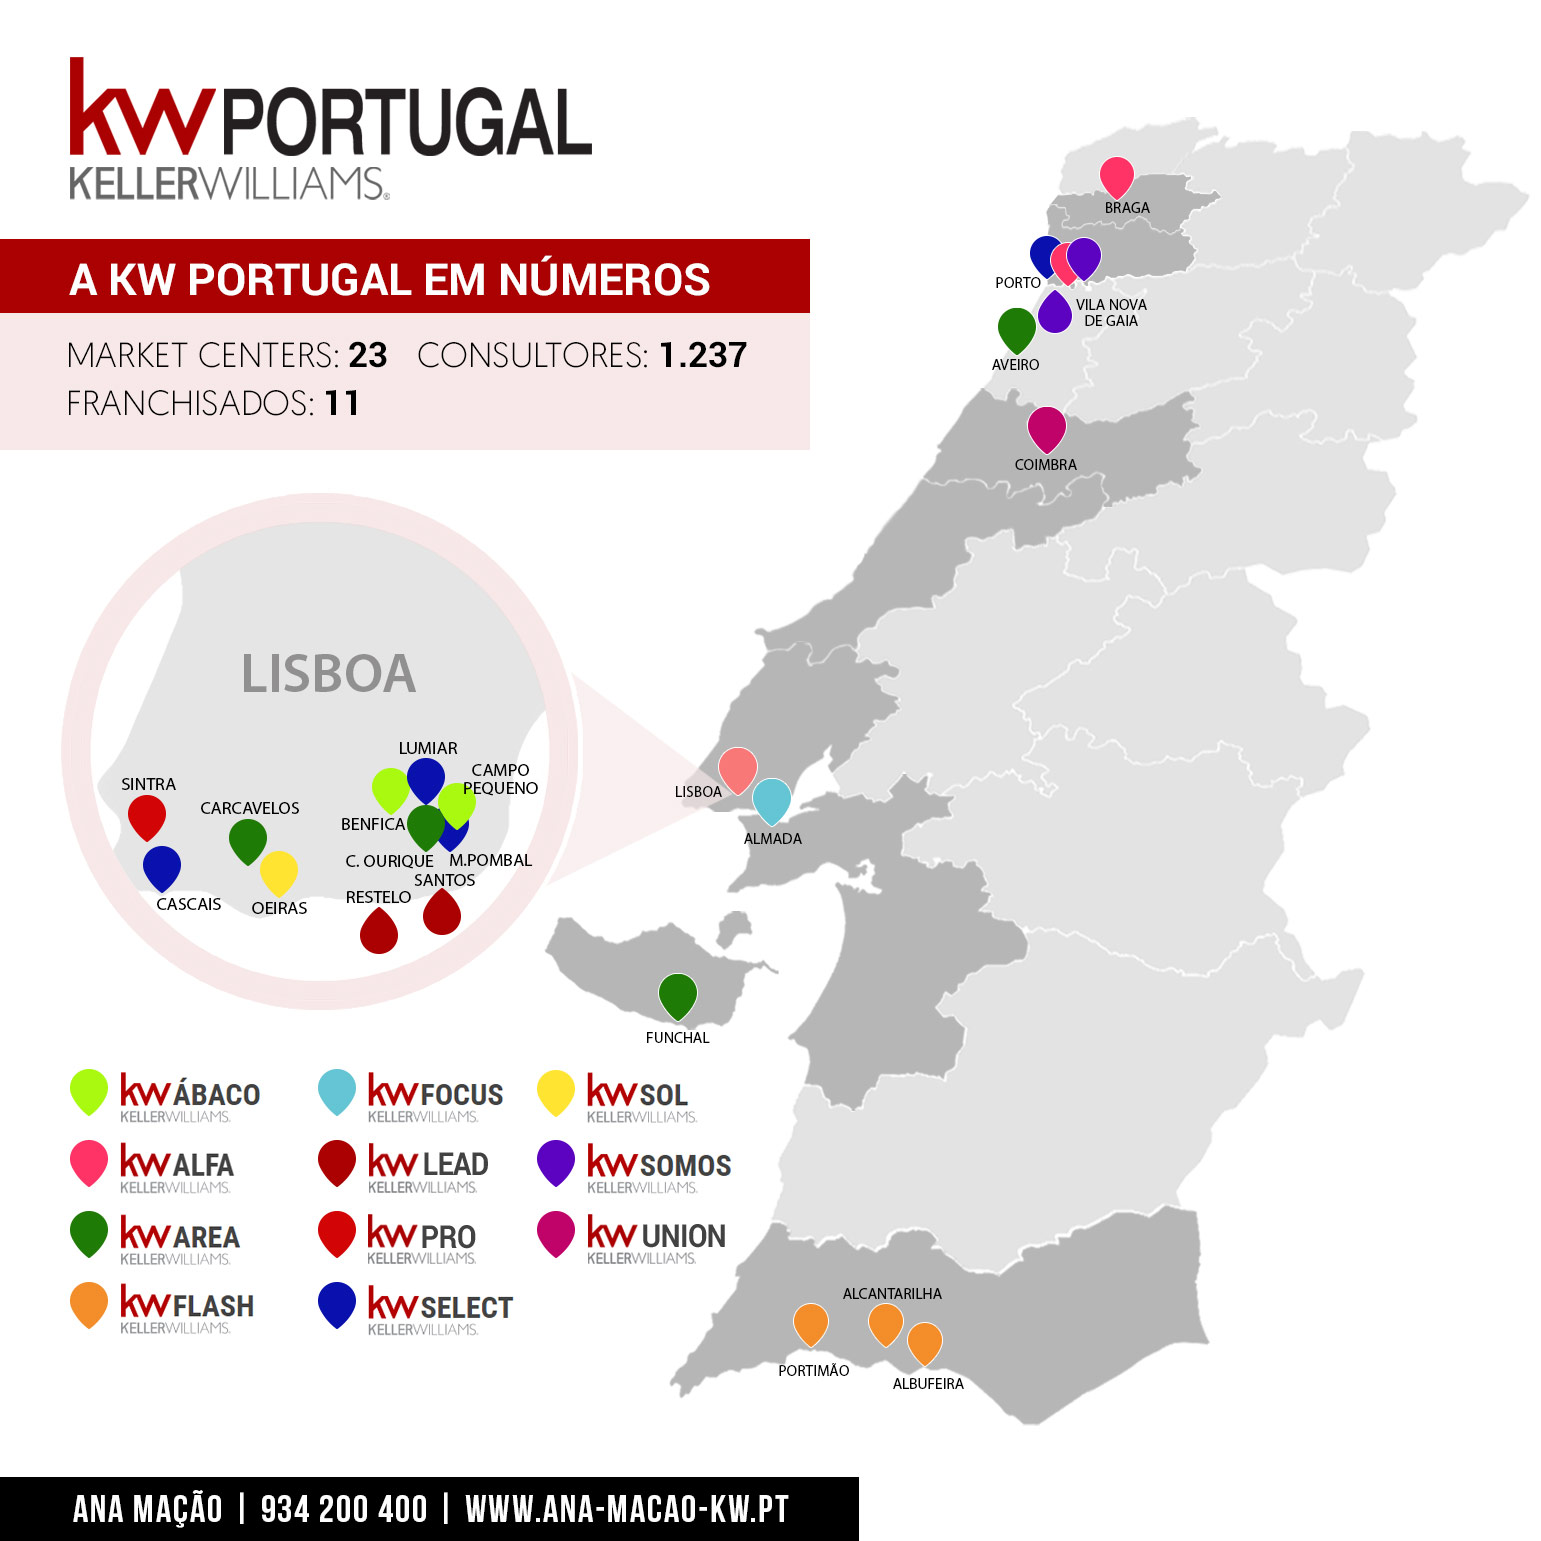 Carte des franchisés et des marchés de KW Portugal - septembre 2019